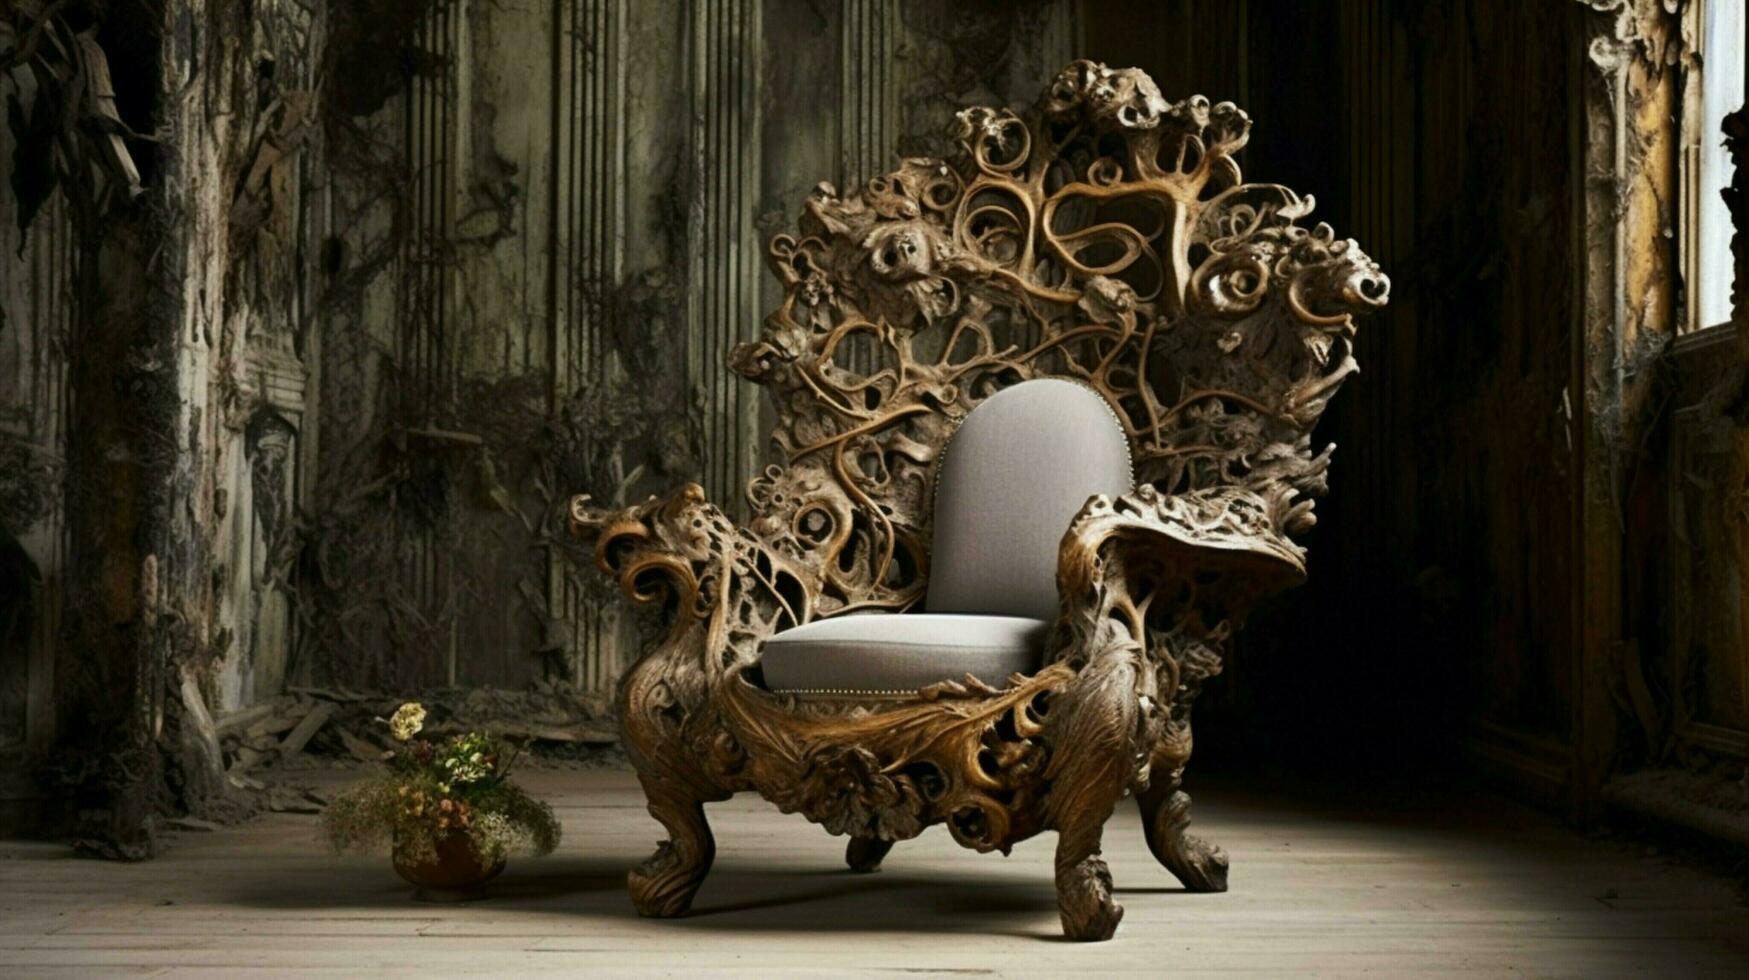 rústico silla en florido diseño agrega elegancia a Doméstico foto